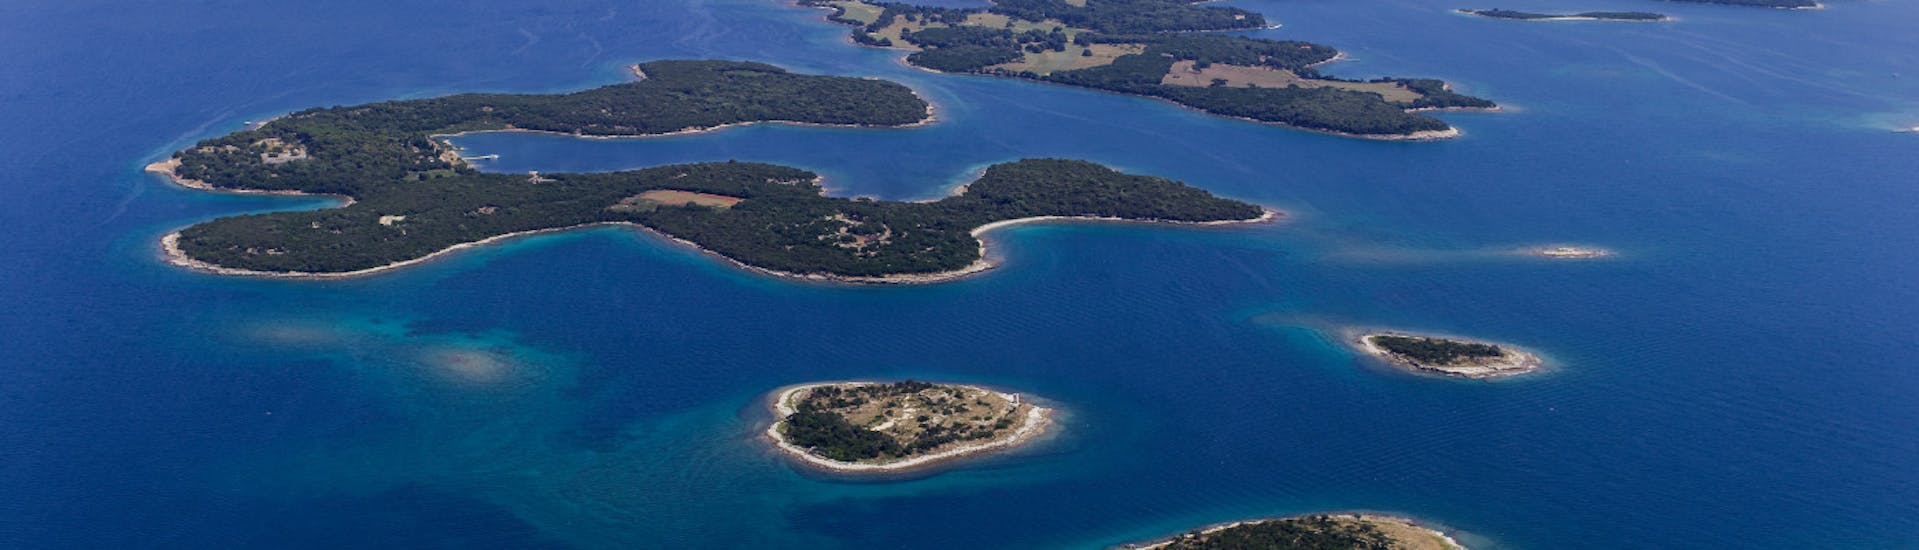 Die Landschaft der Brijuni-Inseln während der private Bootstour von Fažana durch den Brijuni Nationalpark.